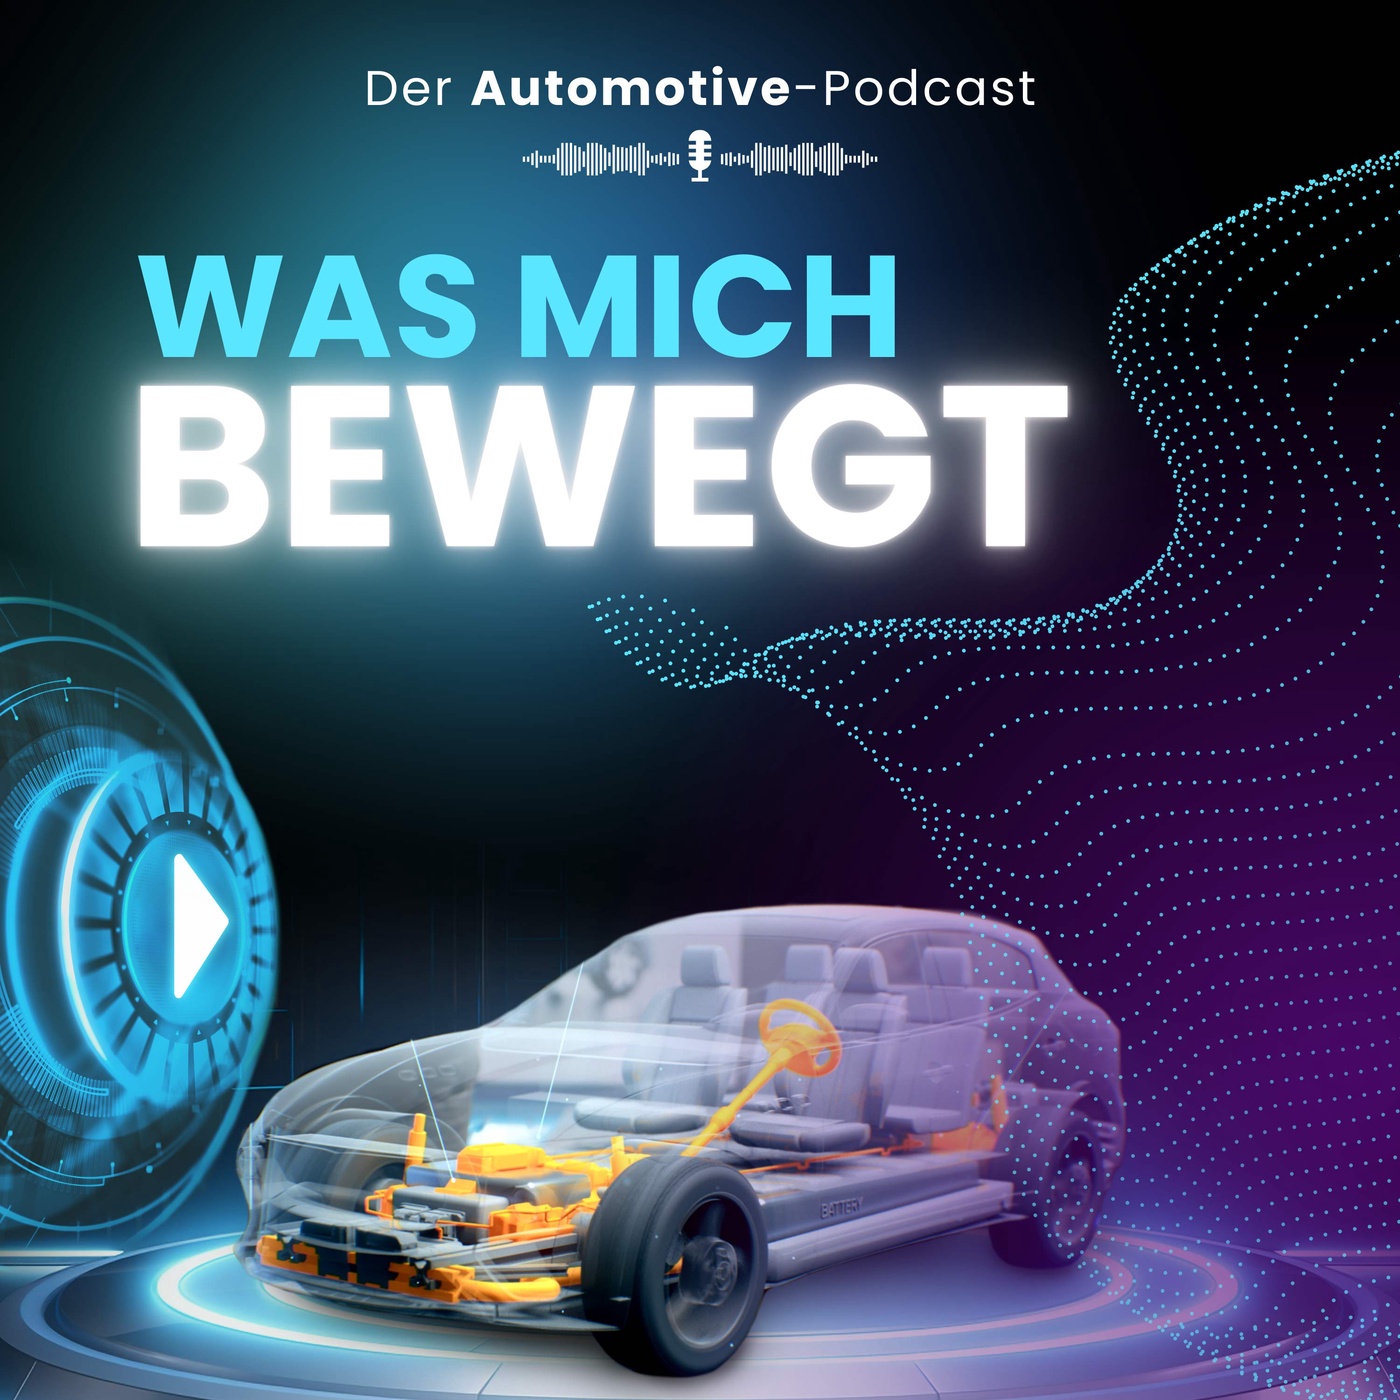 Was mich bewegt – Der Automotive-Podcast